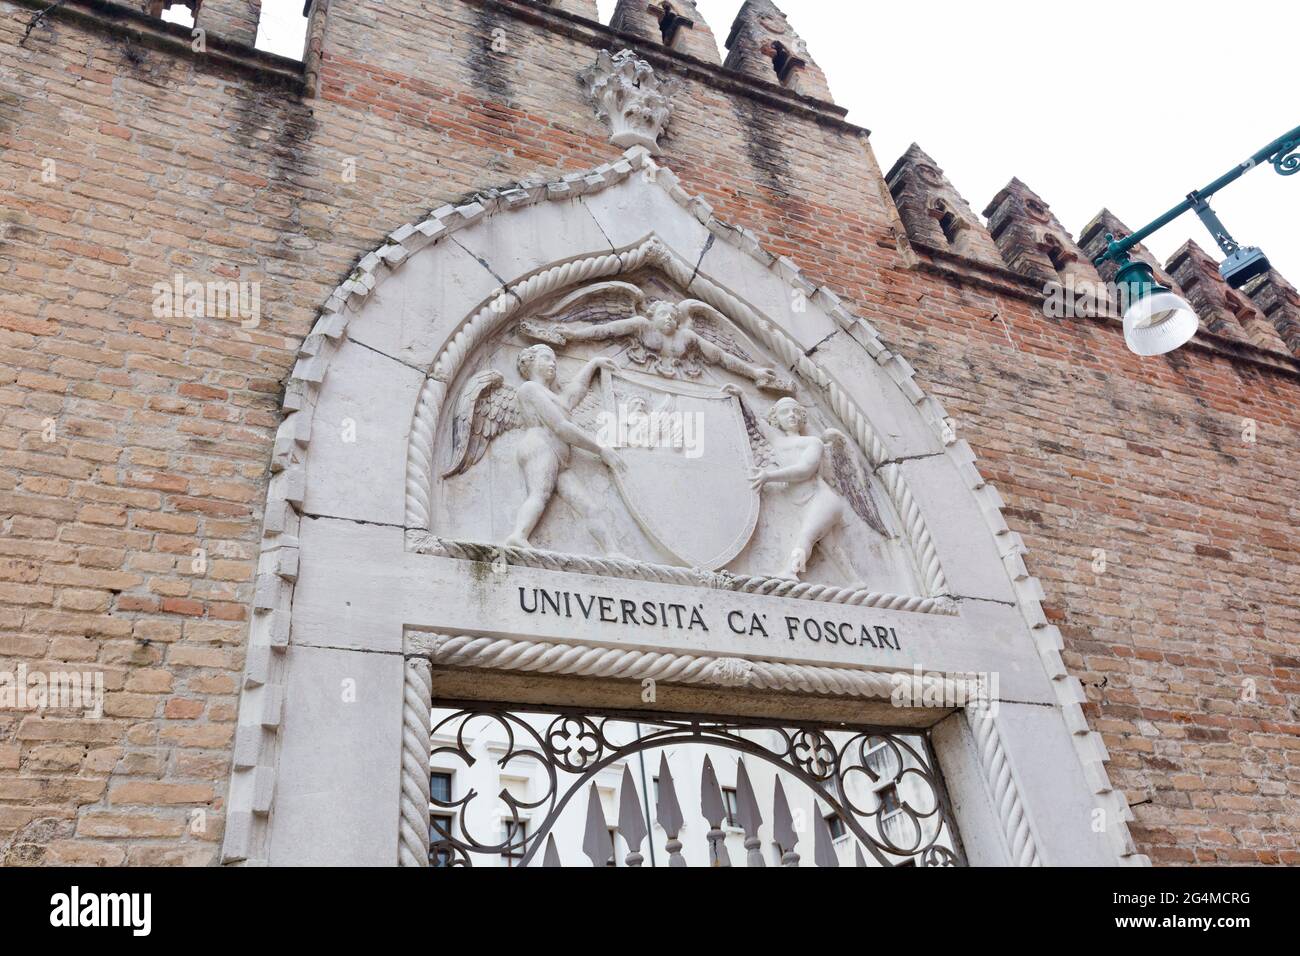 Entrance to Ca' Foscari university, Venice, Italy Stock Photo